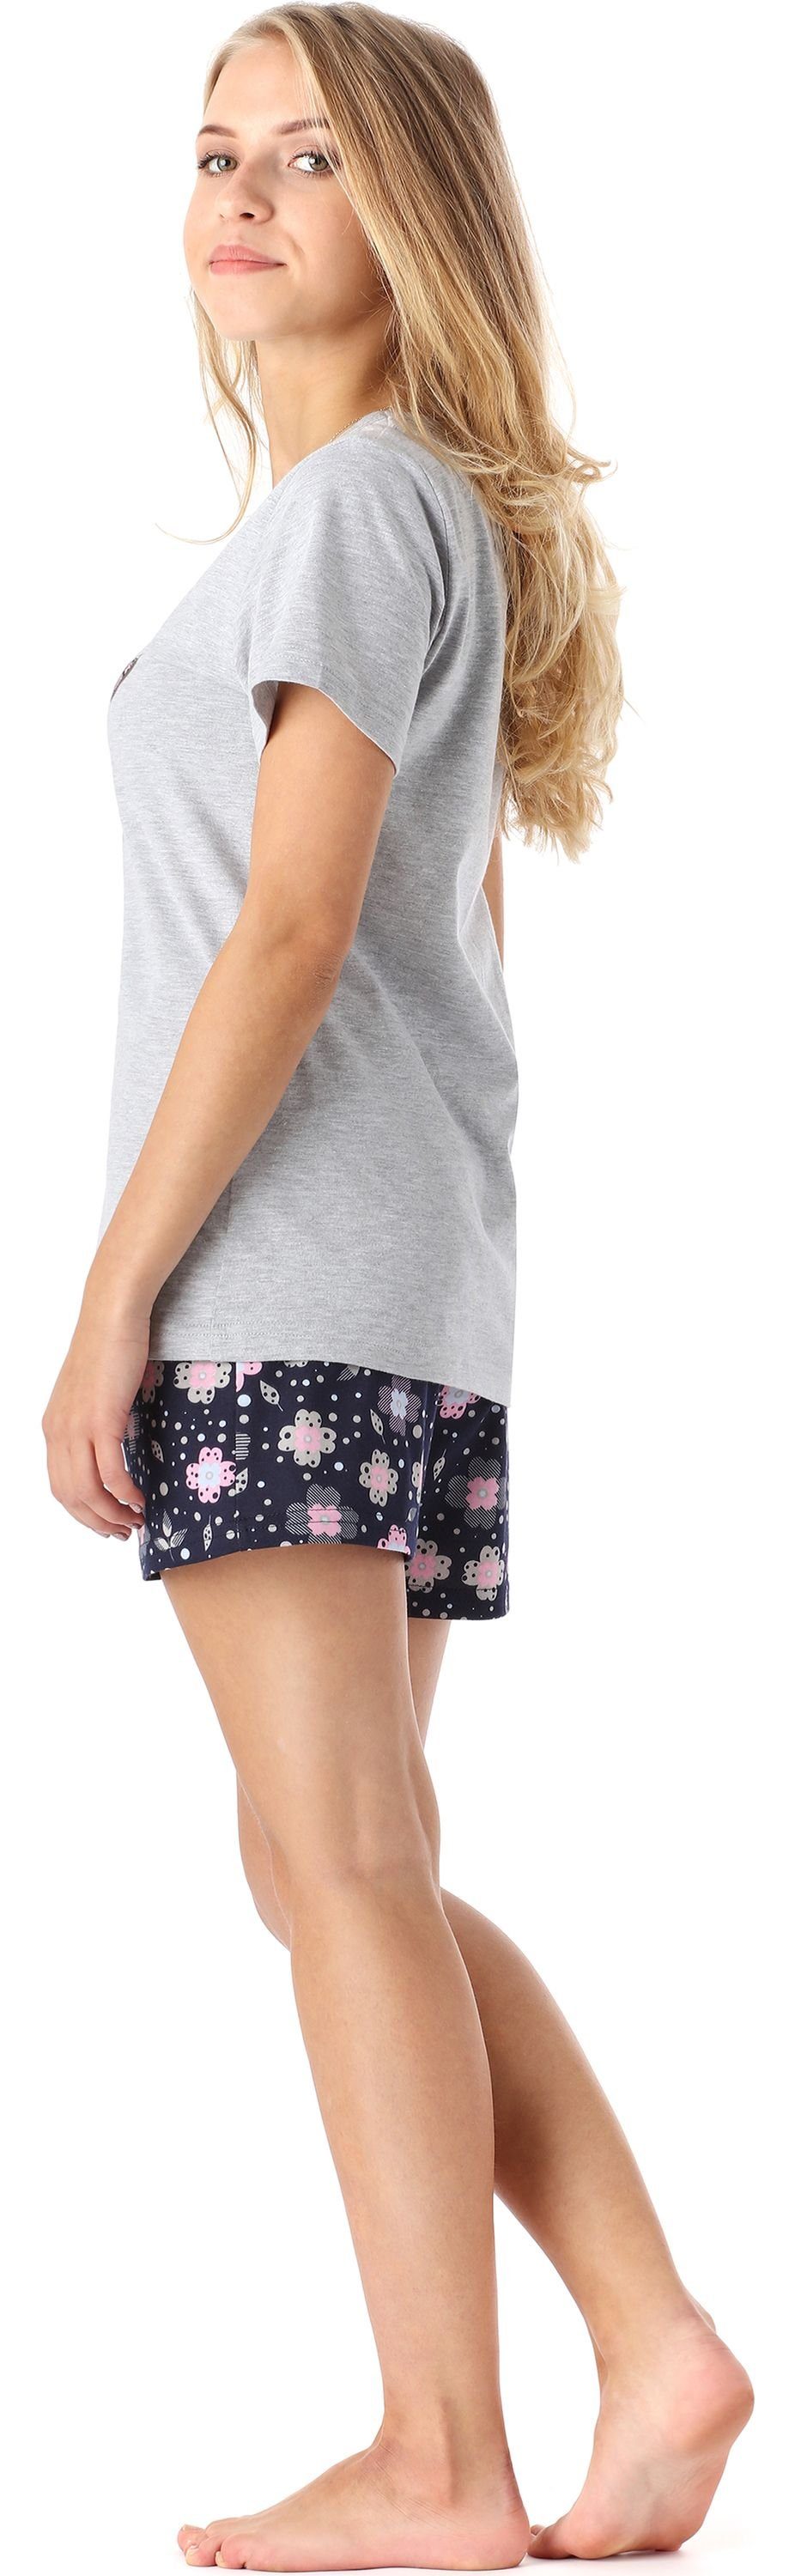 Mädchen Schlafanzug MS10-265 Melange Baumwolle Kurz Schlafanzüge Style Blumen Set Merry Pyjama aus